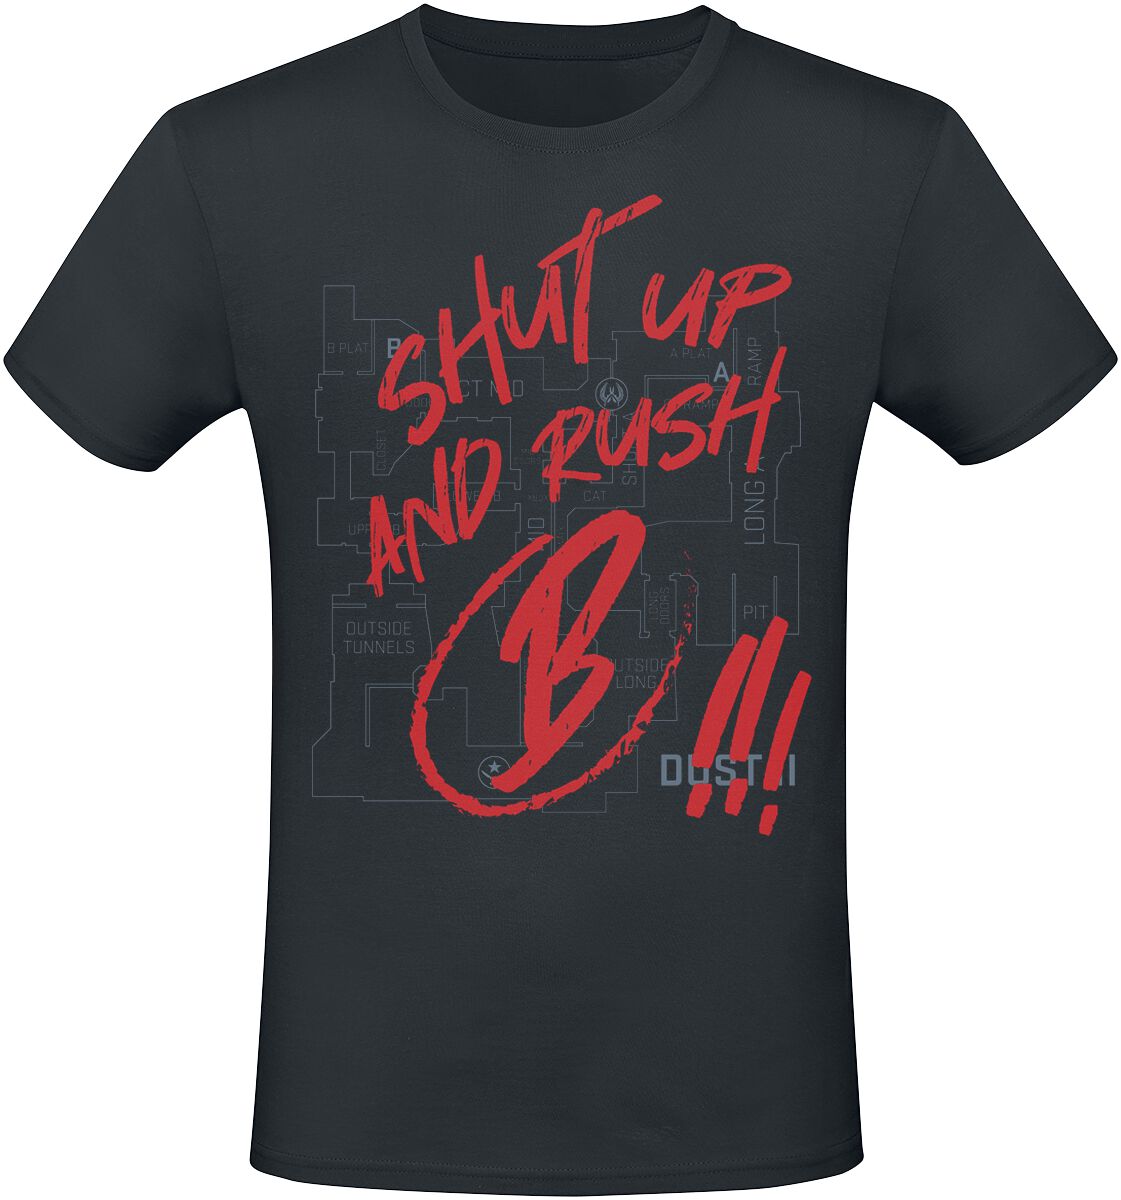 Counter-Strike 2 - Shut Up And Rush B !!! T-Shirt schwarz in S